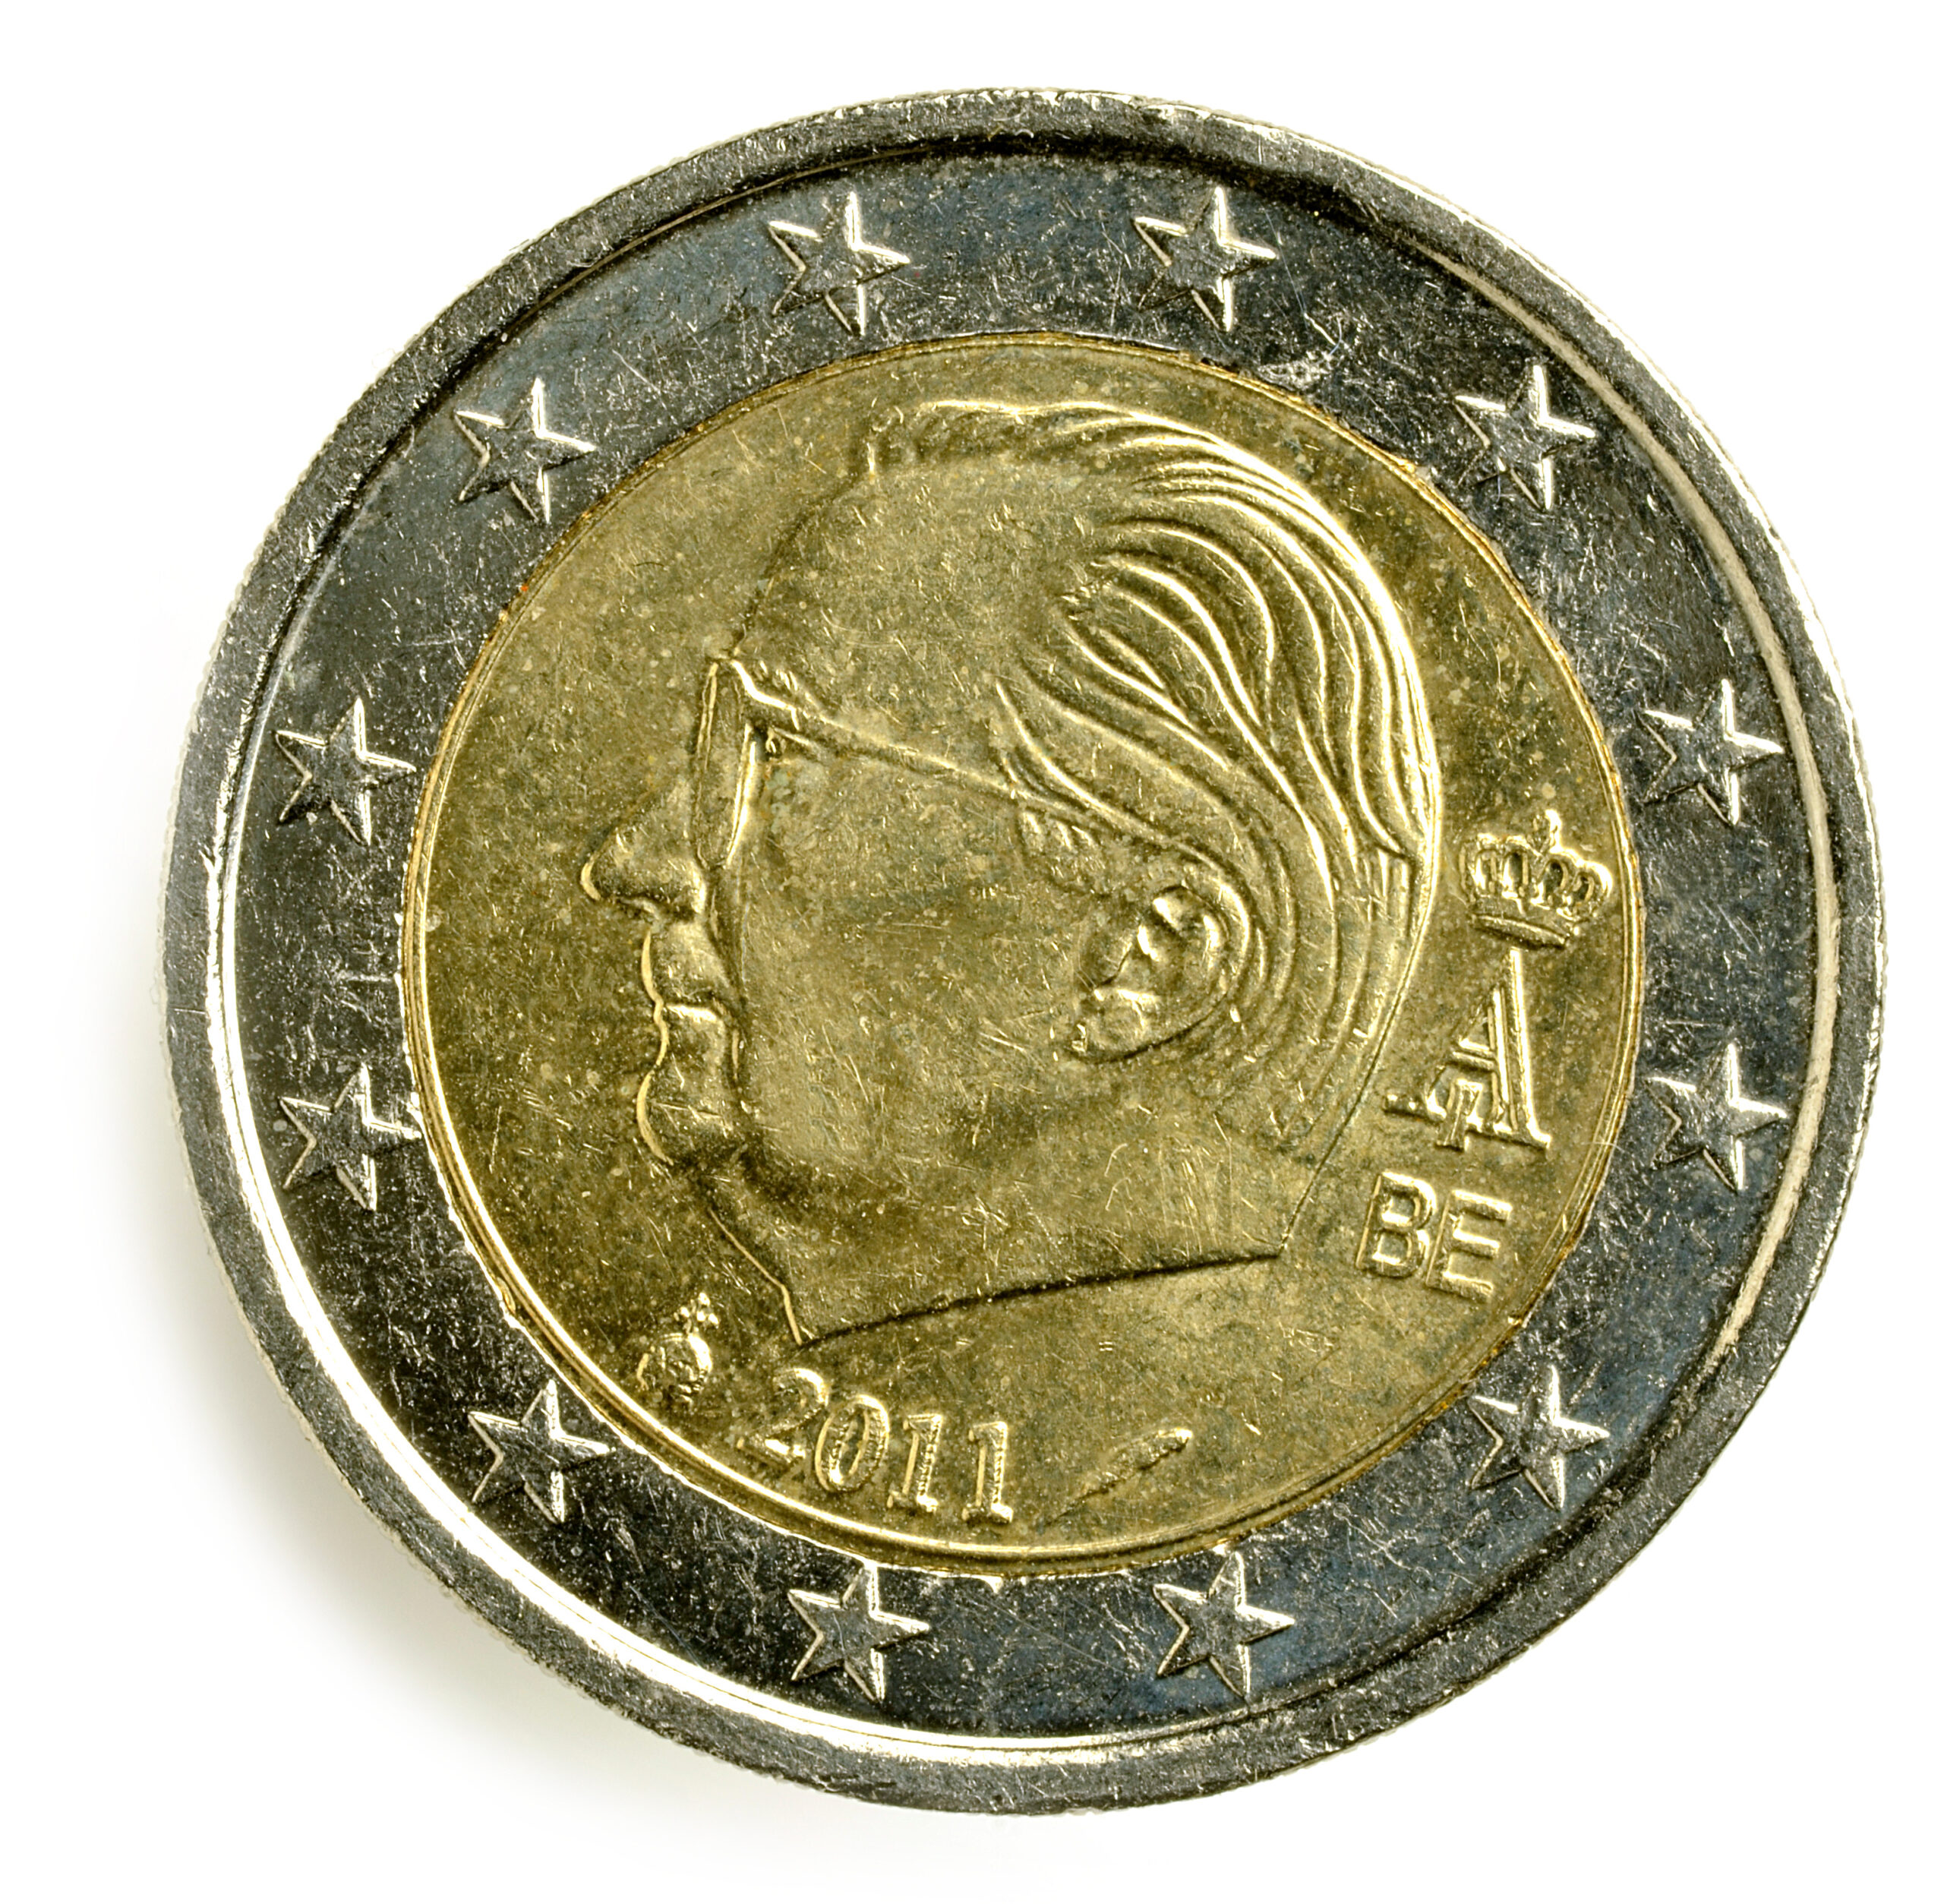 Monete rare da 2 euro: il valore di questa è di migliaia di euro